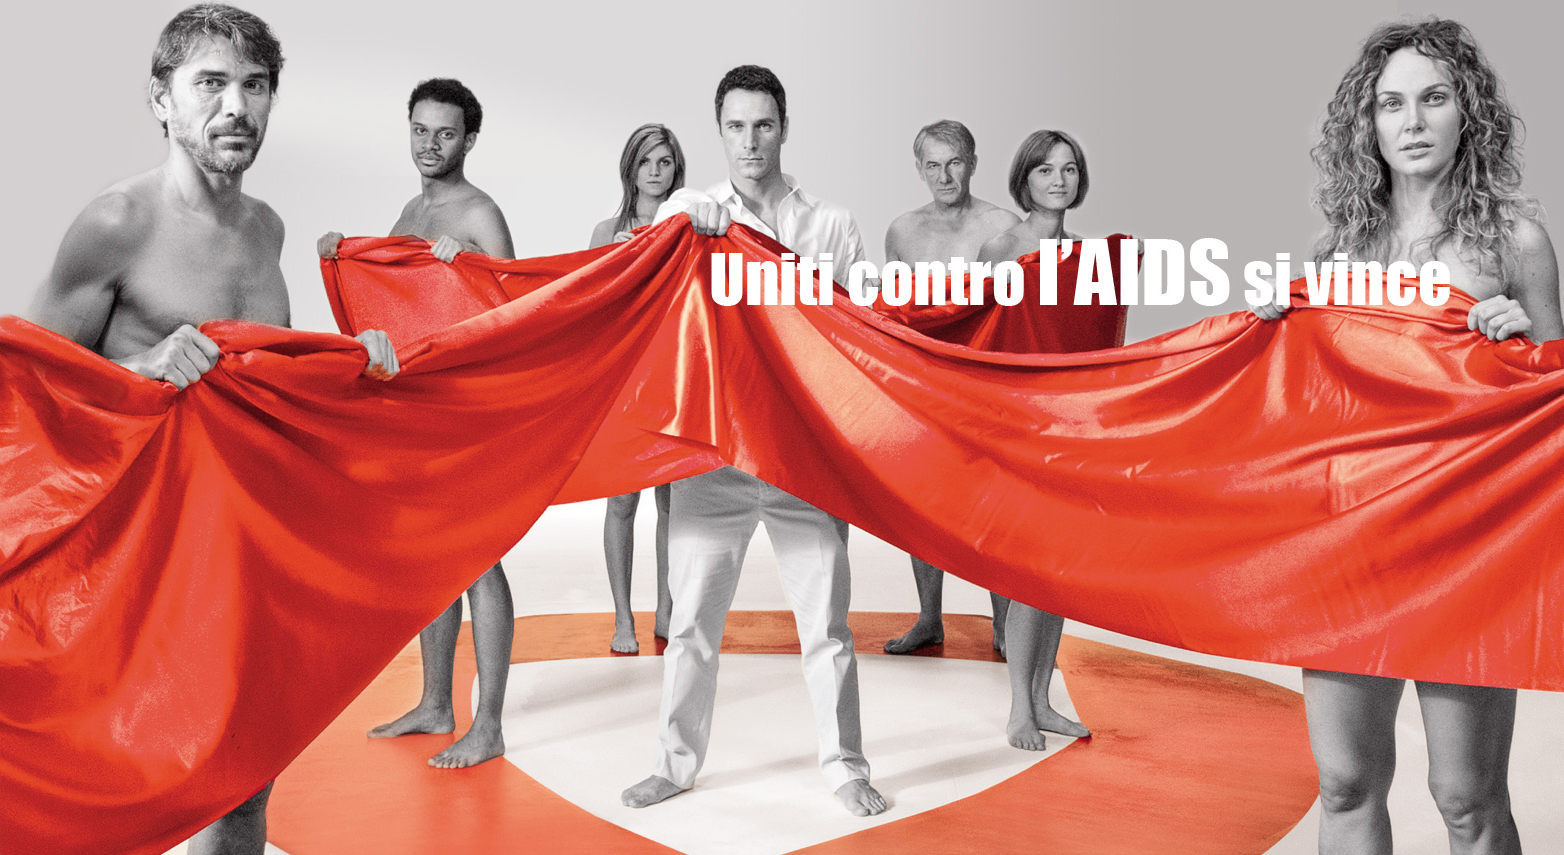 La campagna ministeriale contro l'AIDS